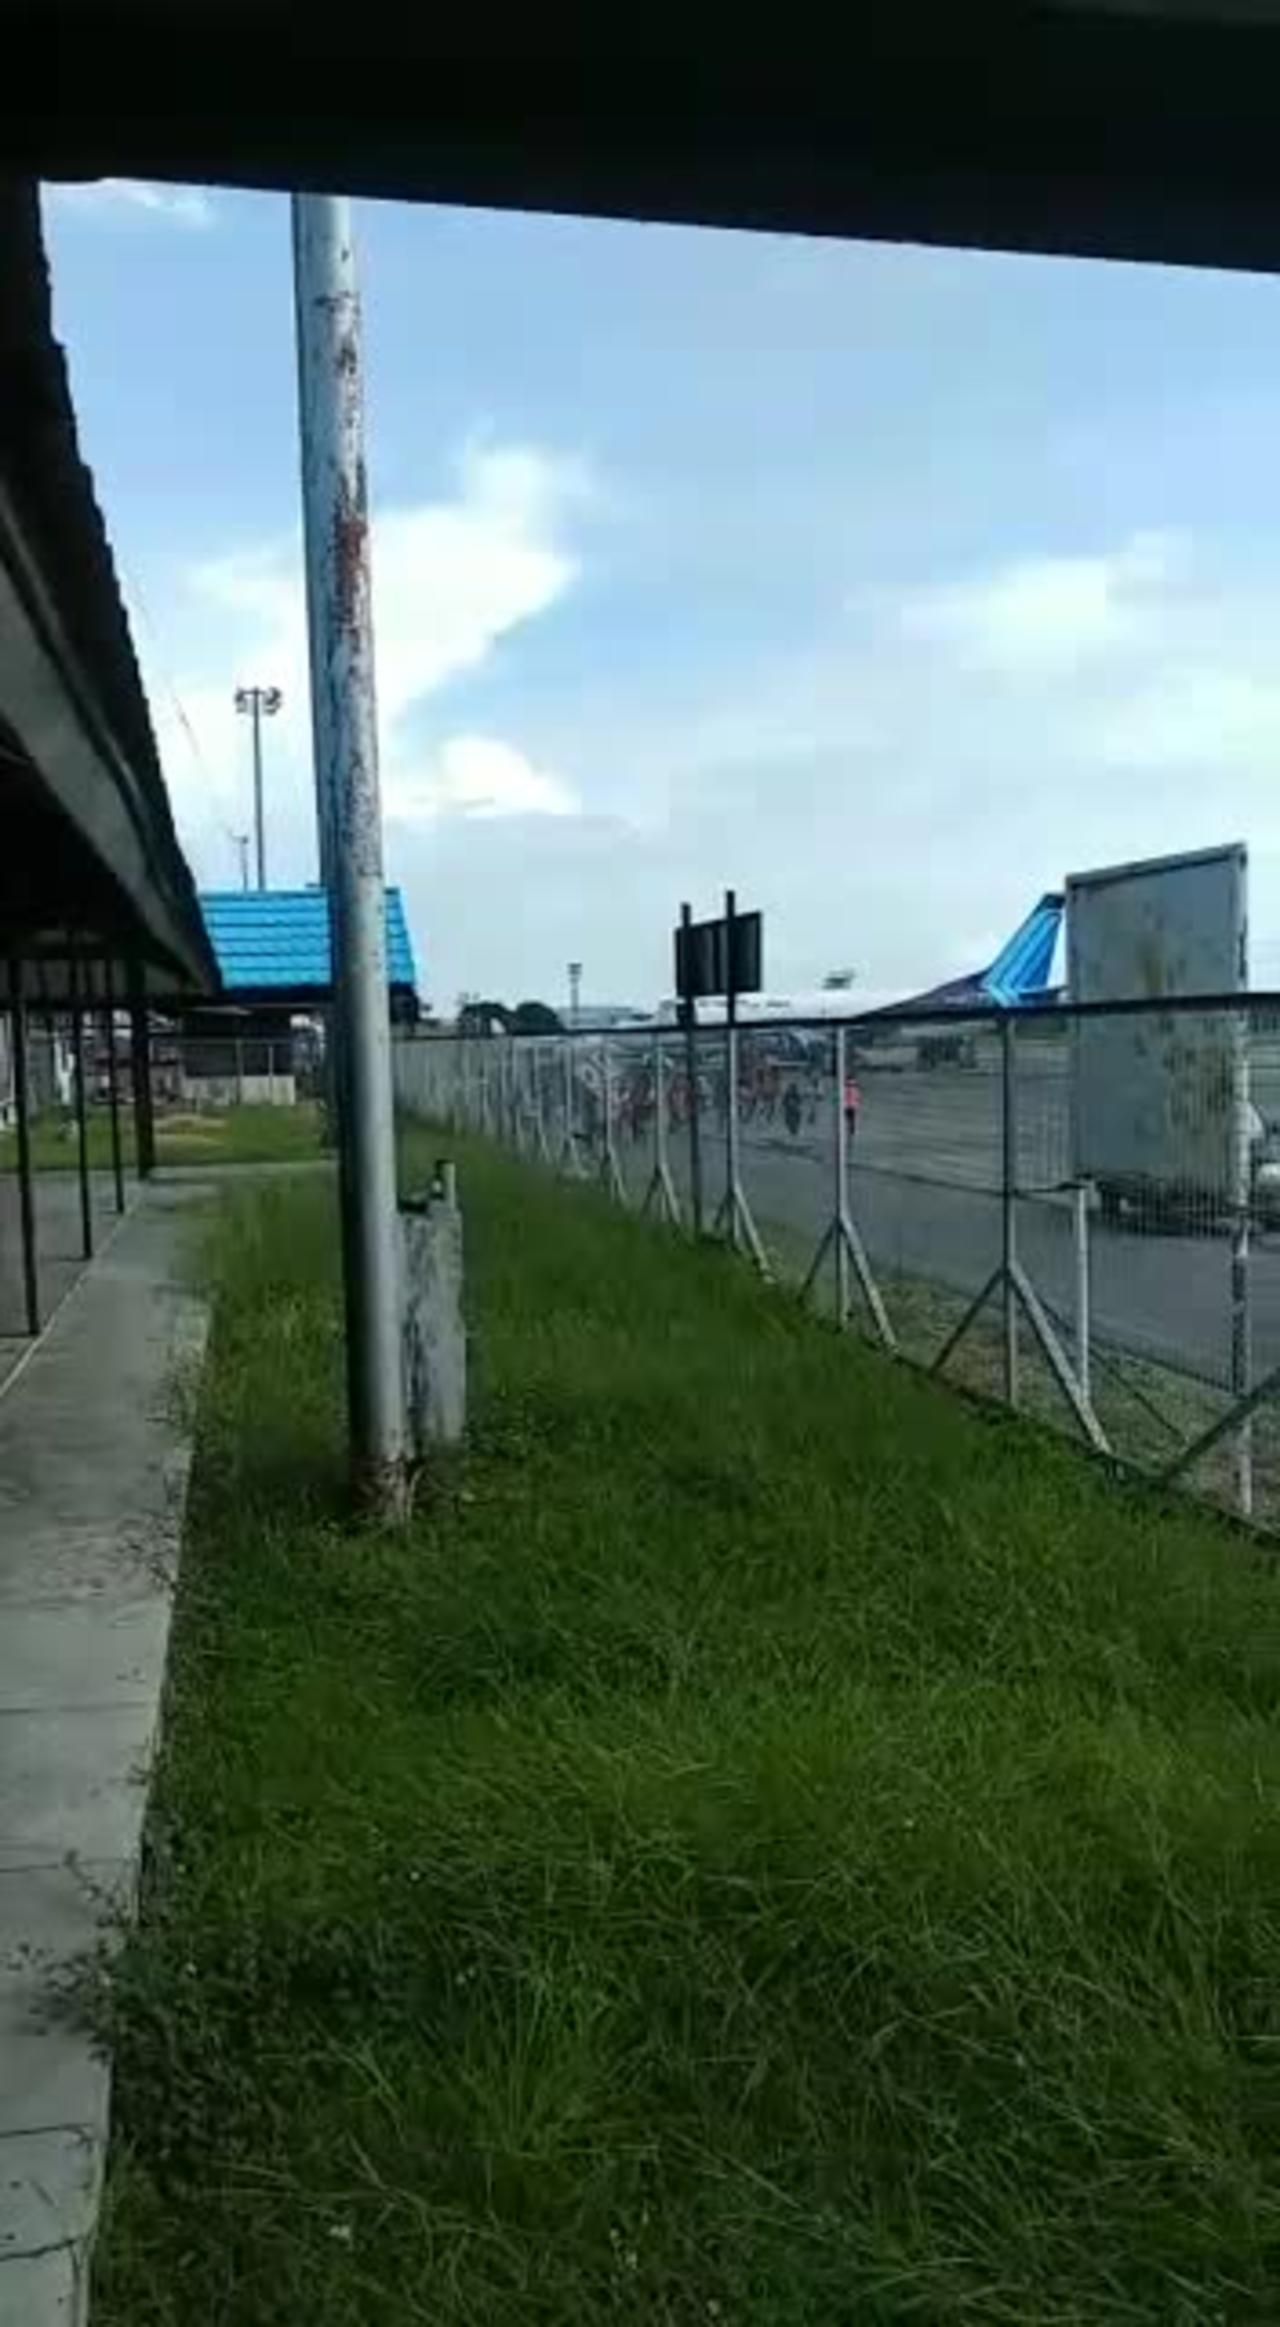 jayapura airport indonesia